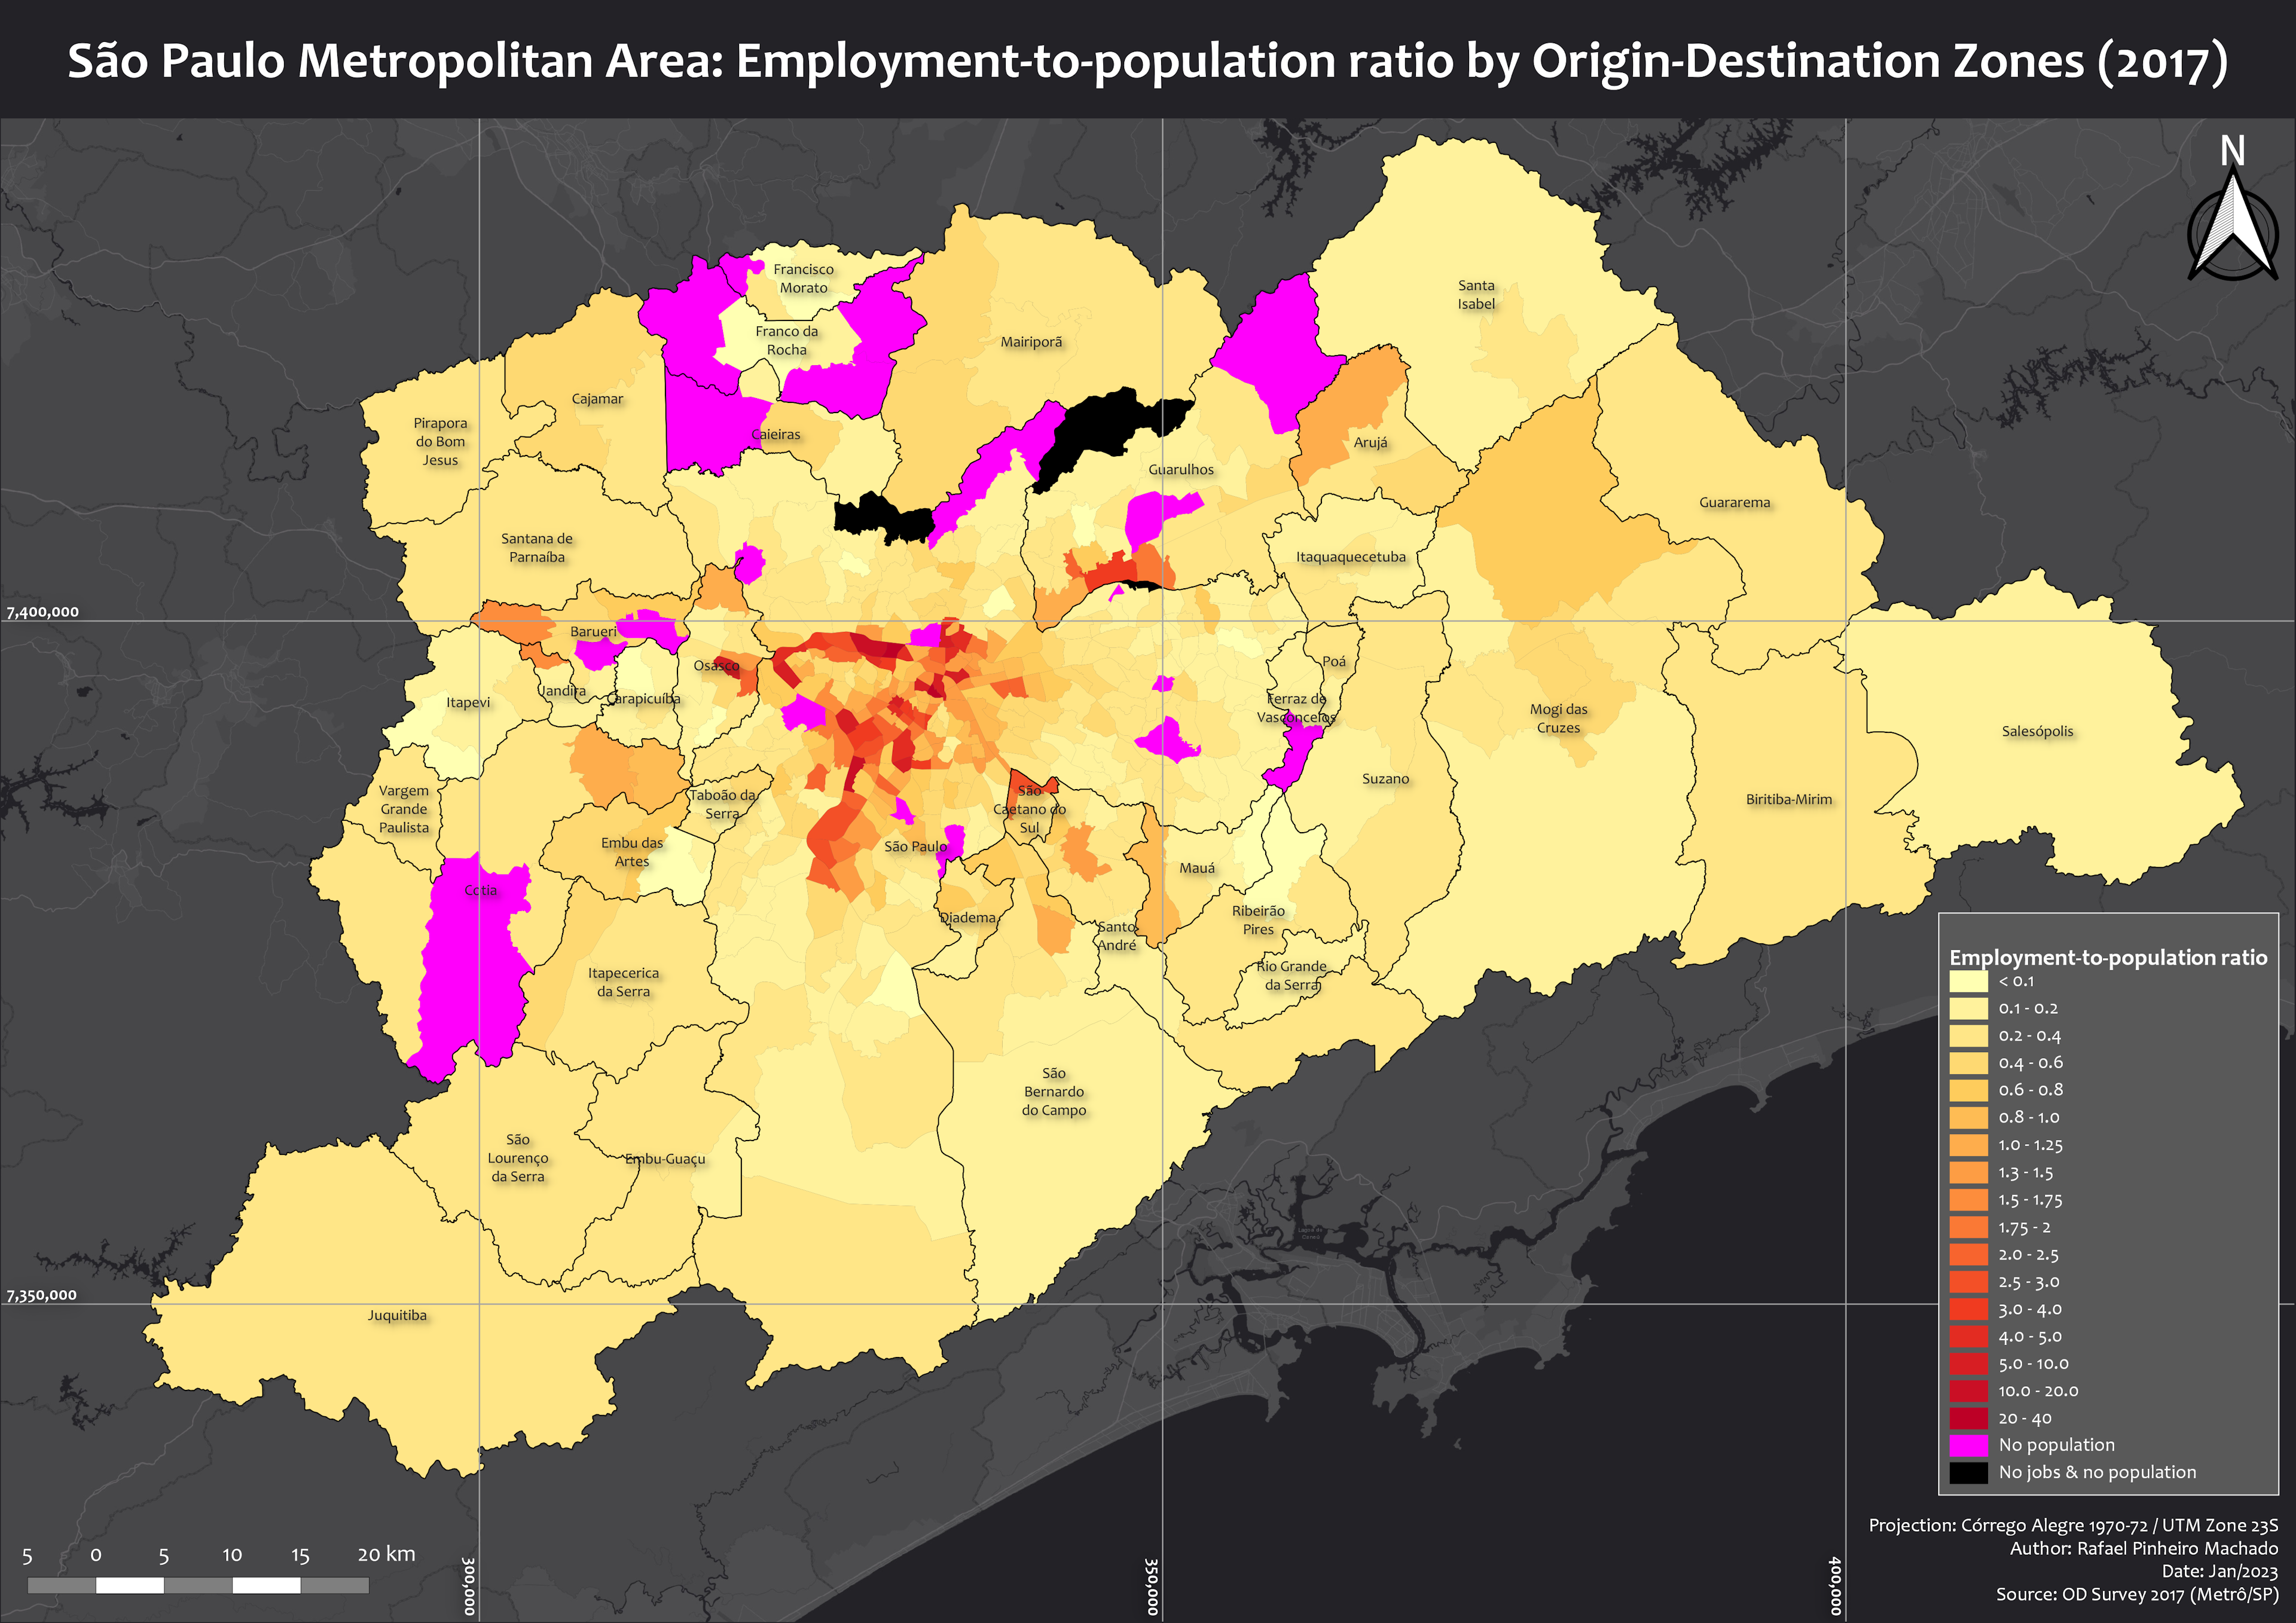 RMSP - Empregos / População por Zona OD